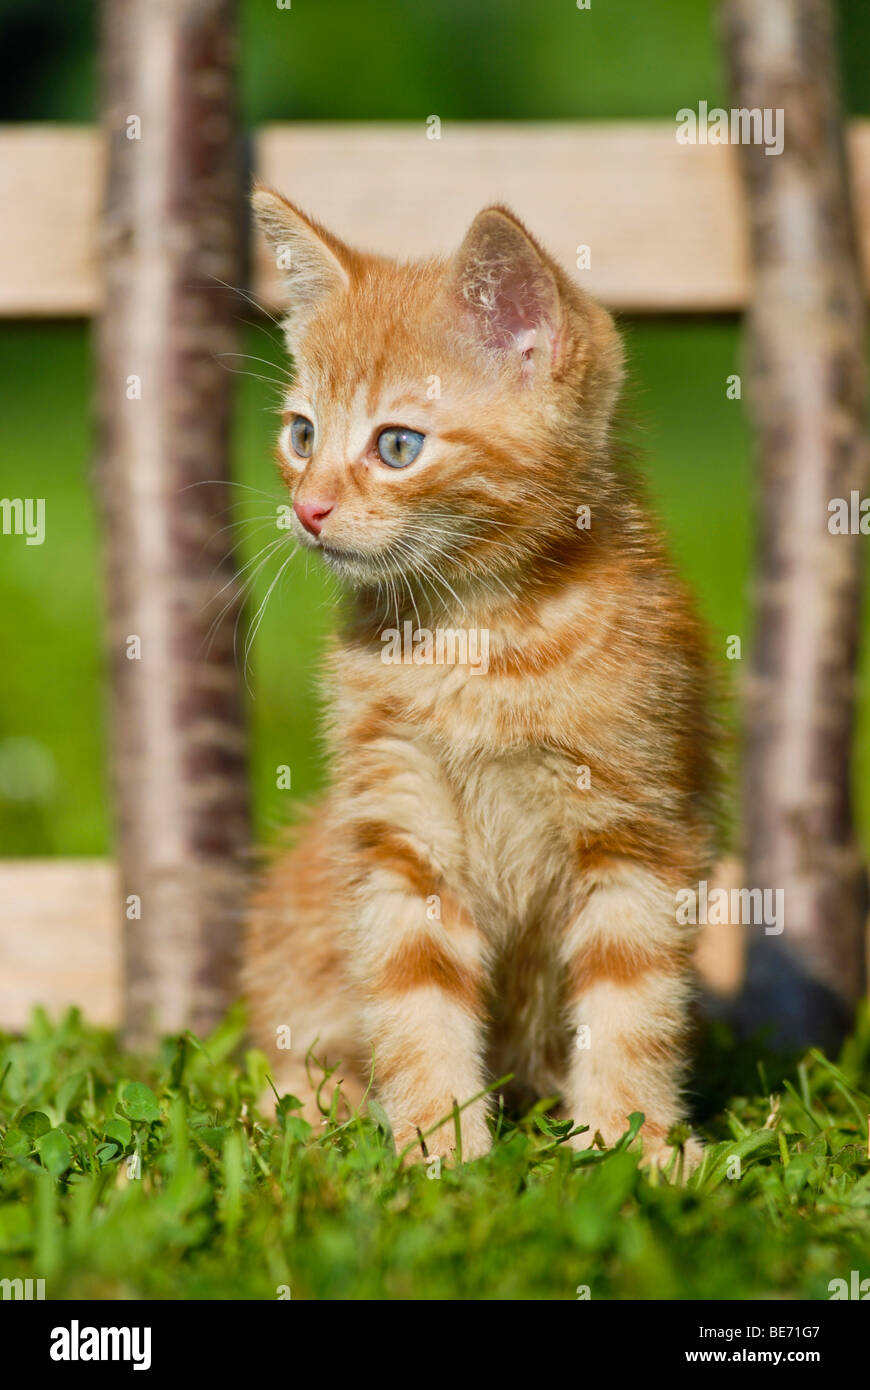 Il gatto domestico, gattino, seduto di fronte a una recinzione di legno Foto Stock